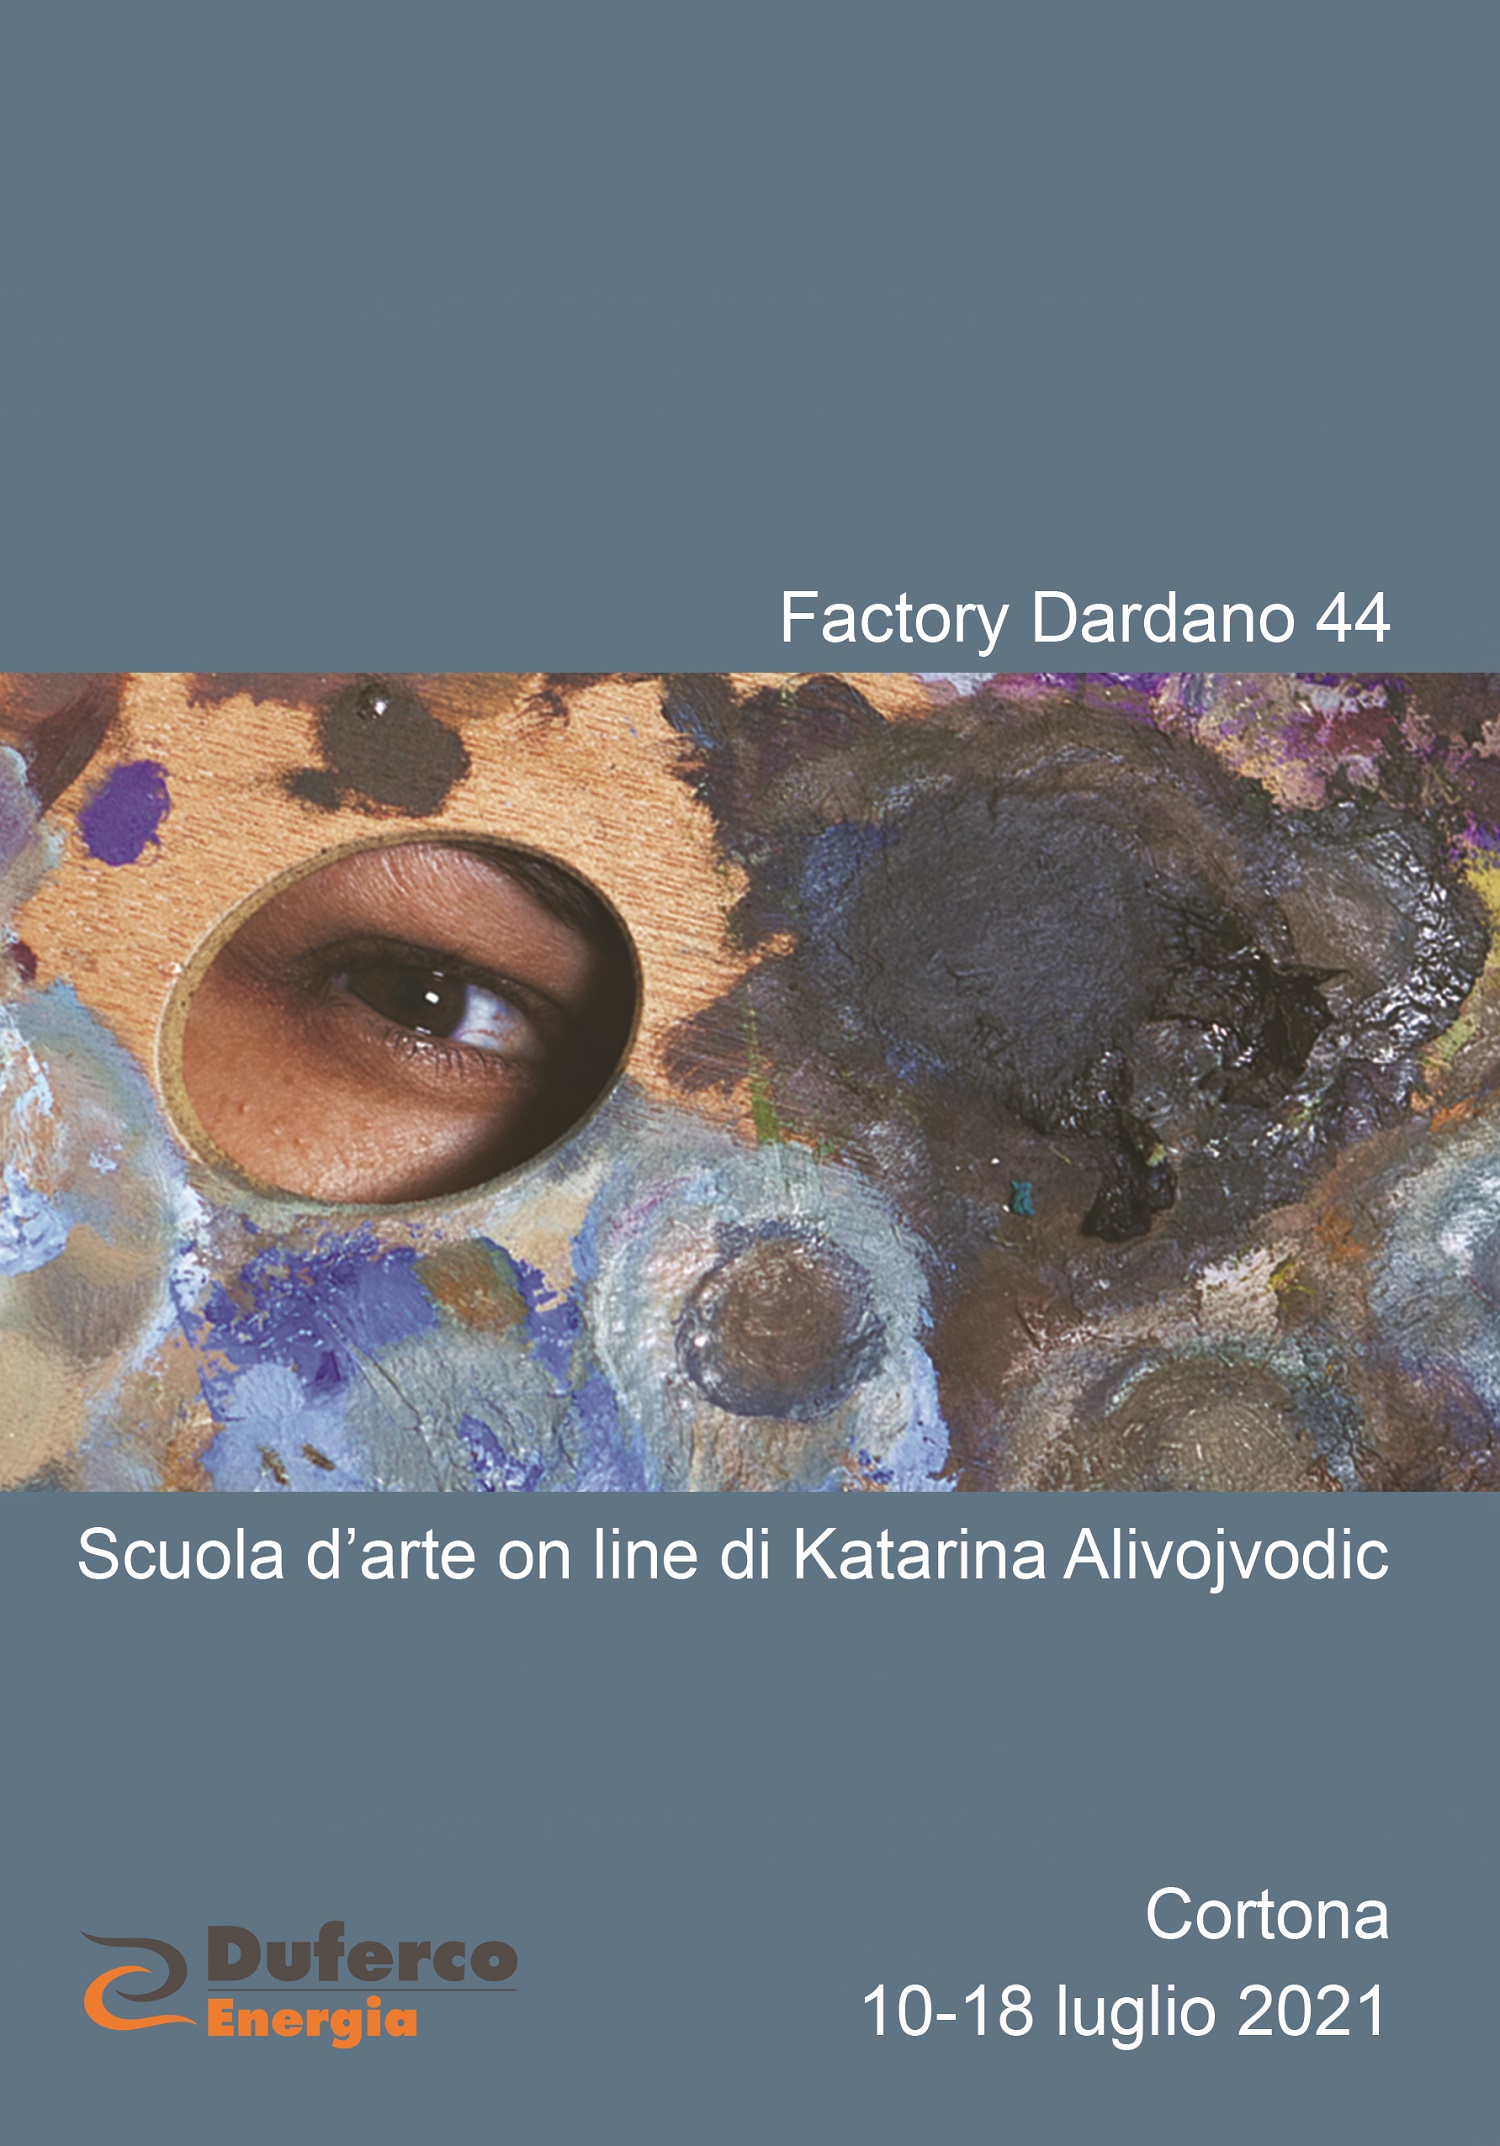 La Scuola d’arte on line di Katarina Alivojvodic espone a Cortona